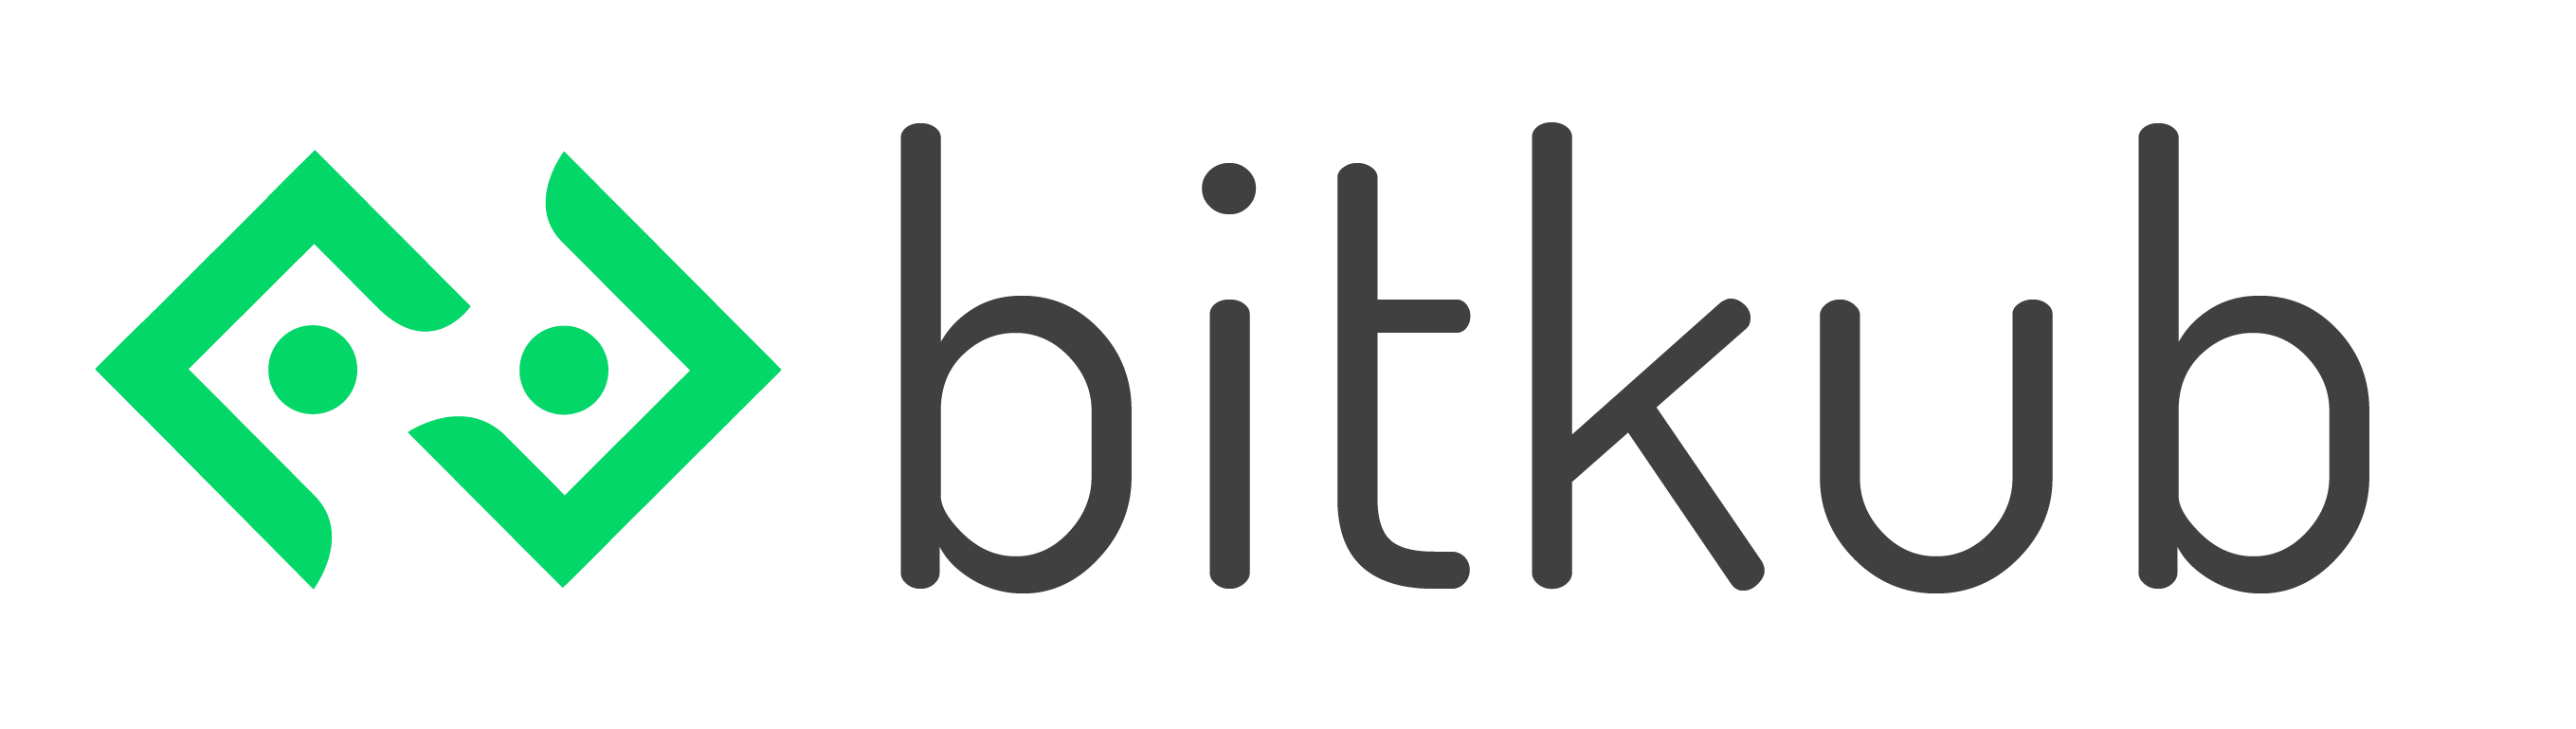 Bitkub.com logo